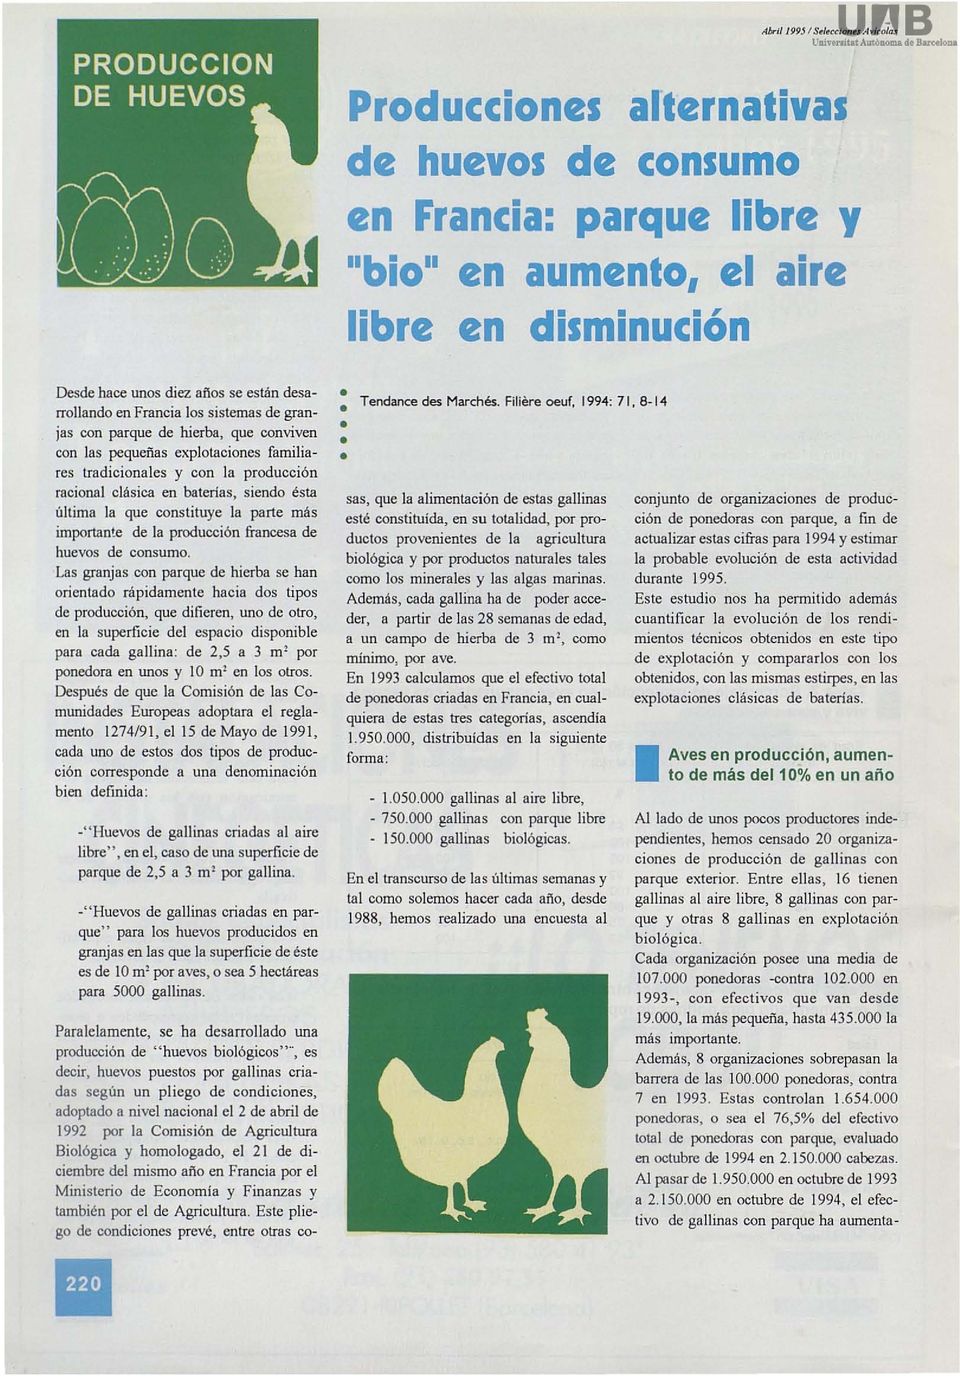 que constituye la parte más importante de la producción francesa de huevos de consumo. Las granjas con parque de hierba se han orientado rápidamente hacia dos tipos de producción.